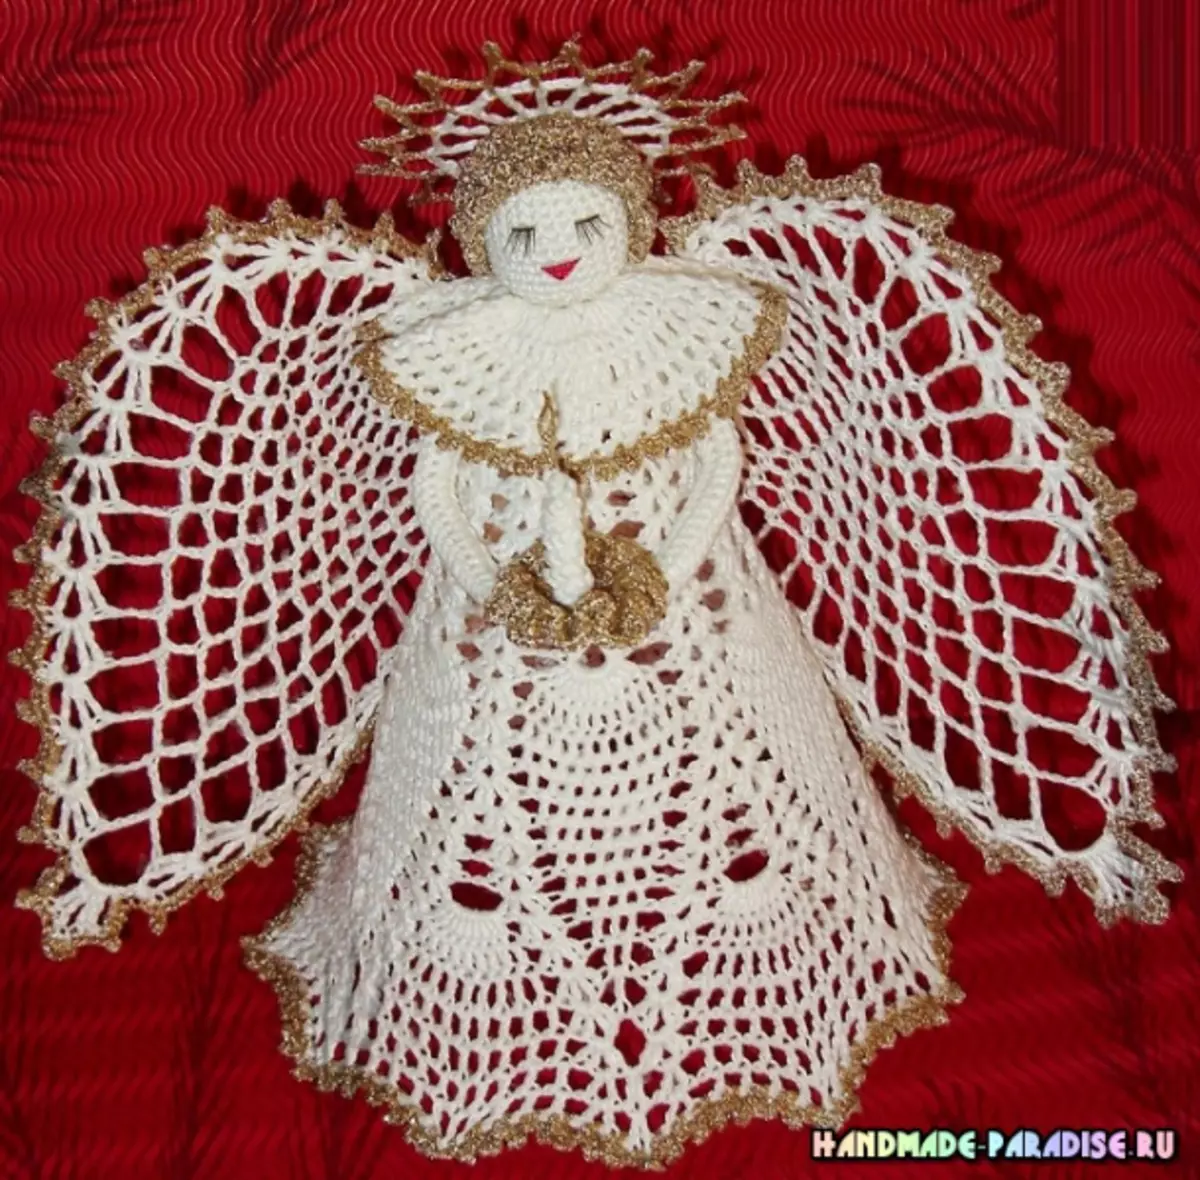 Come legare un crochet di angelo openwork